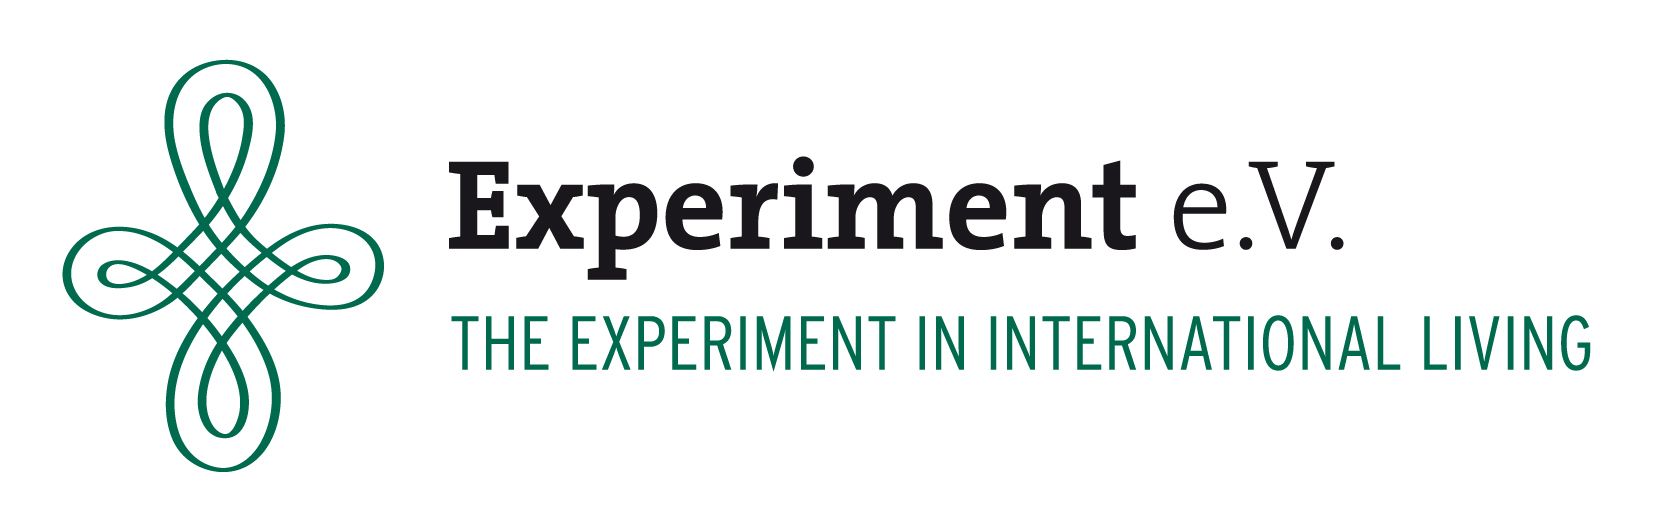 Experiment - International Living e.V.